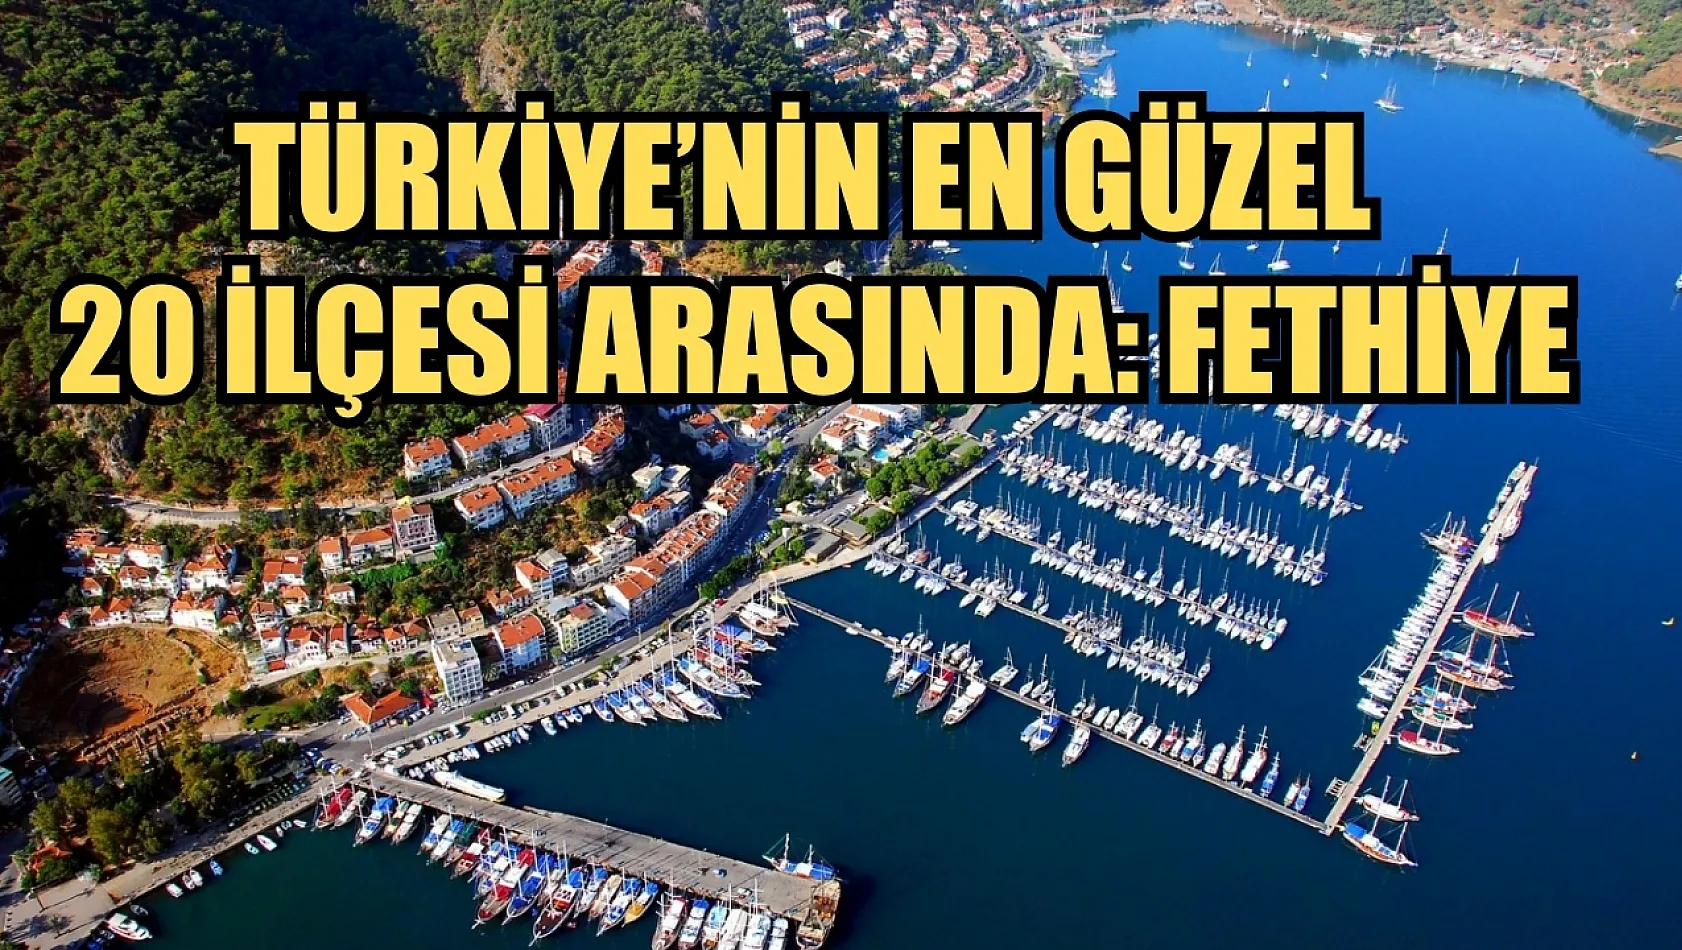 Türkiye'nin en güzel 20 ilçesi arasında: Fethiye